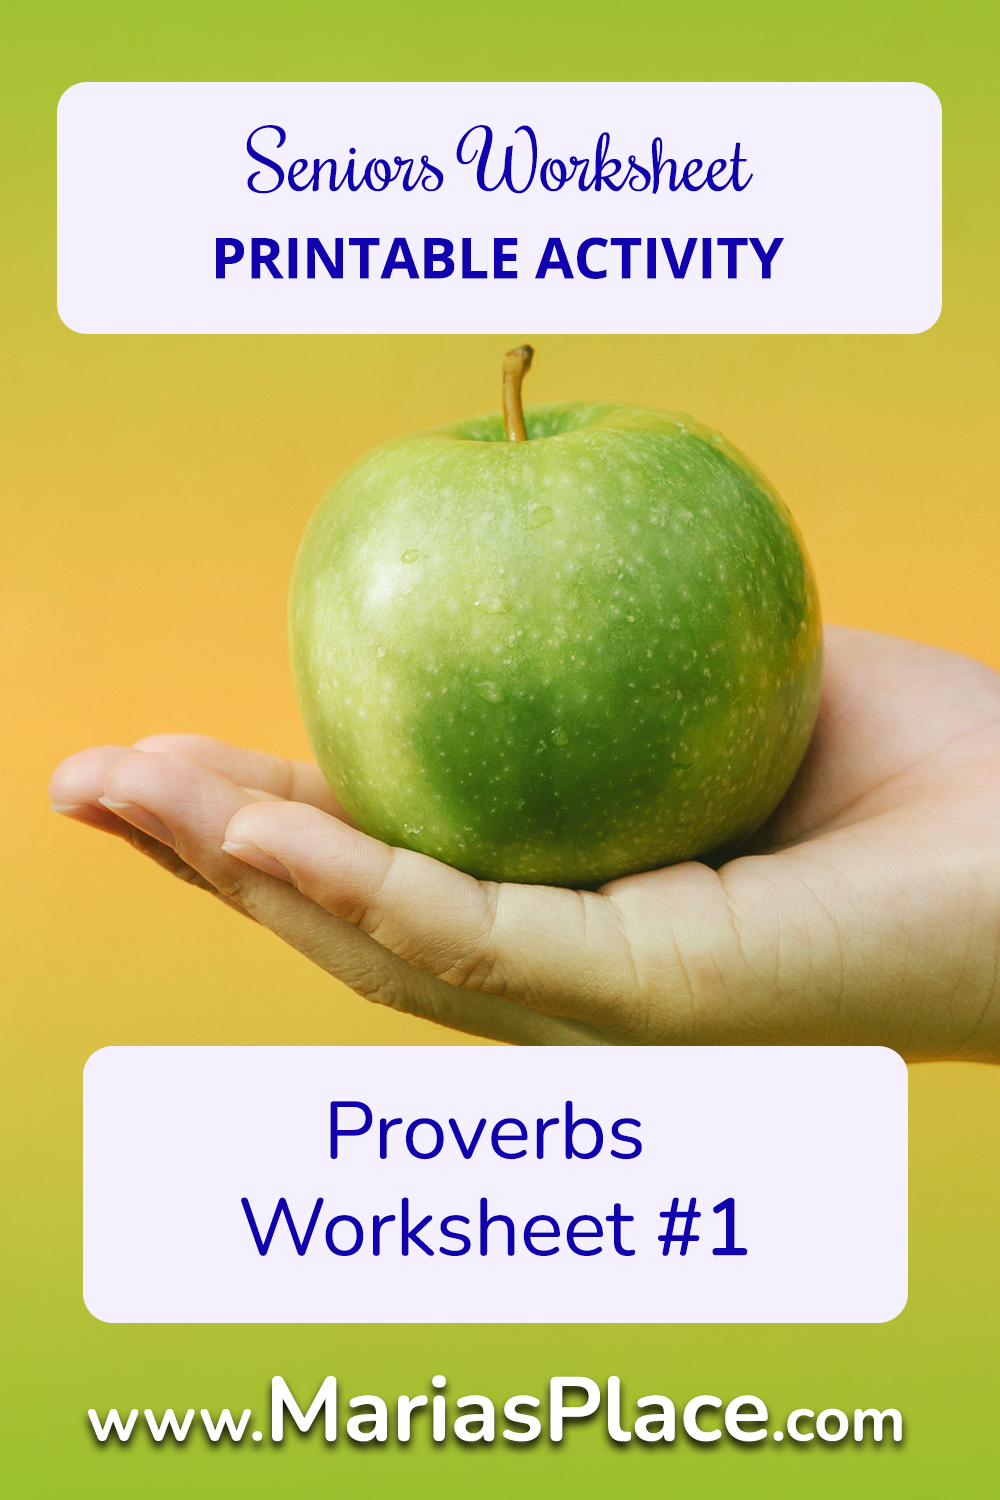 Proverbs Worksheet #1